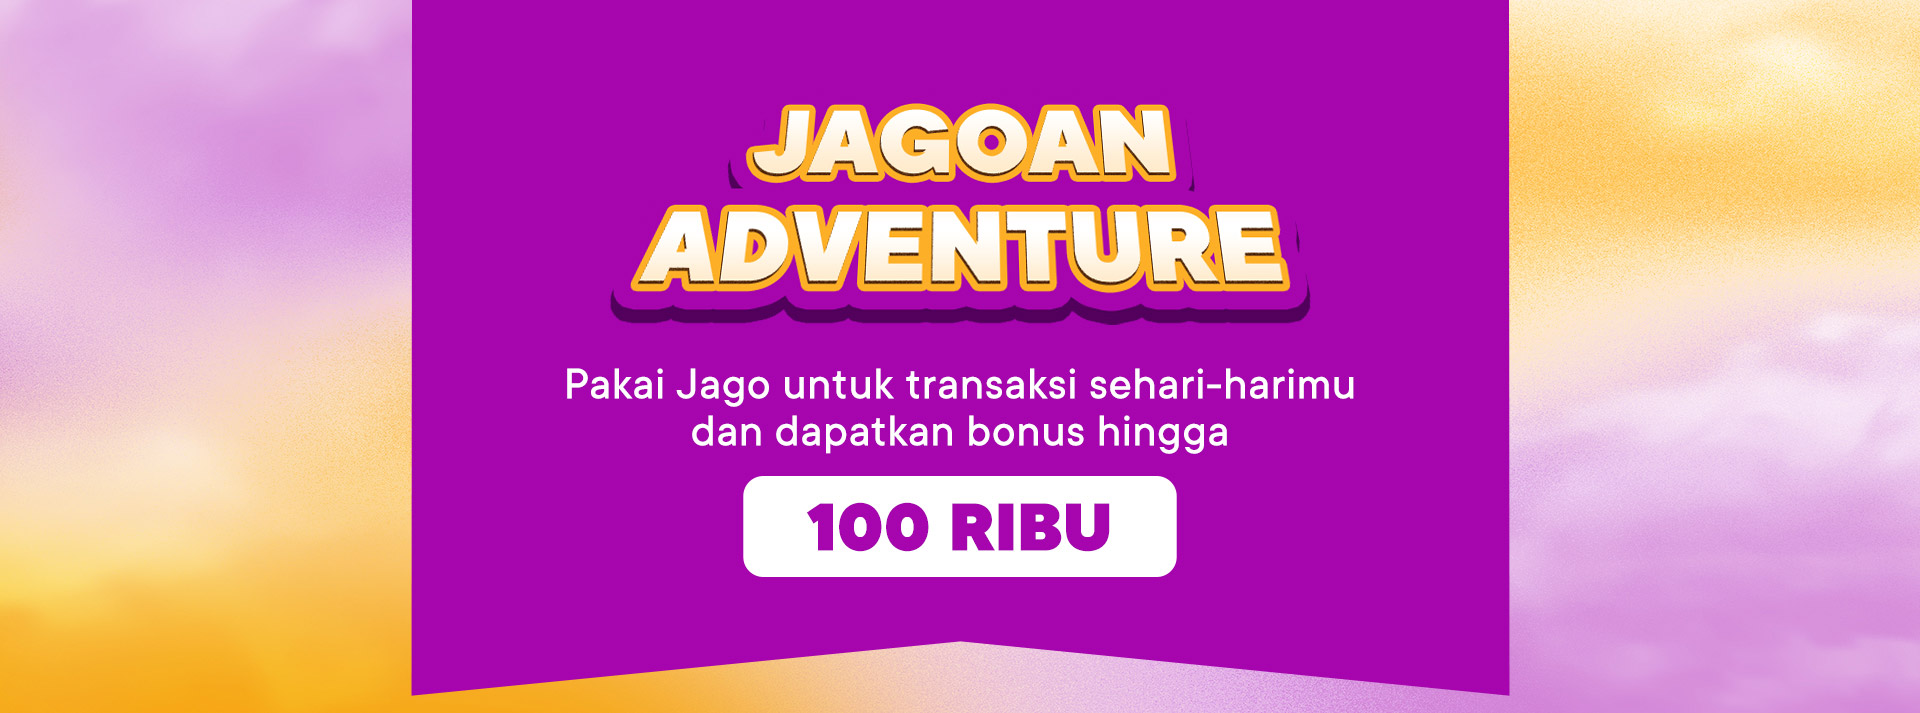 Pakai Jago untuk transaksi sehari-harimu dan dapatkan bonus hingga 100 ribu.